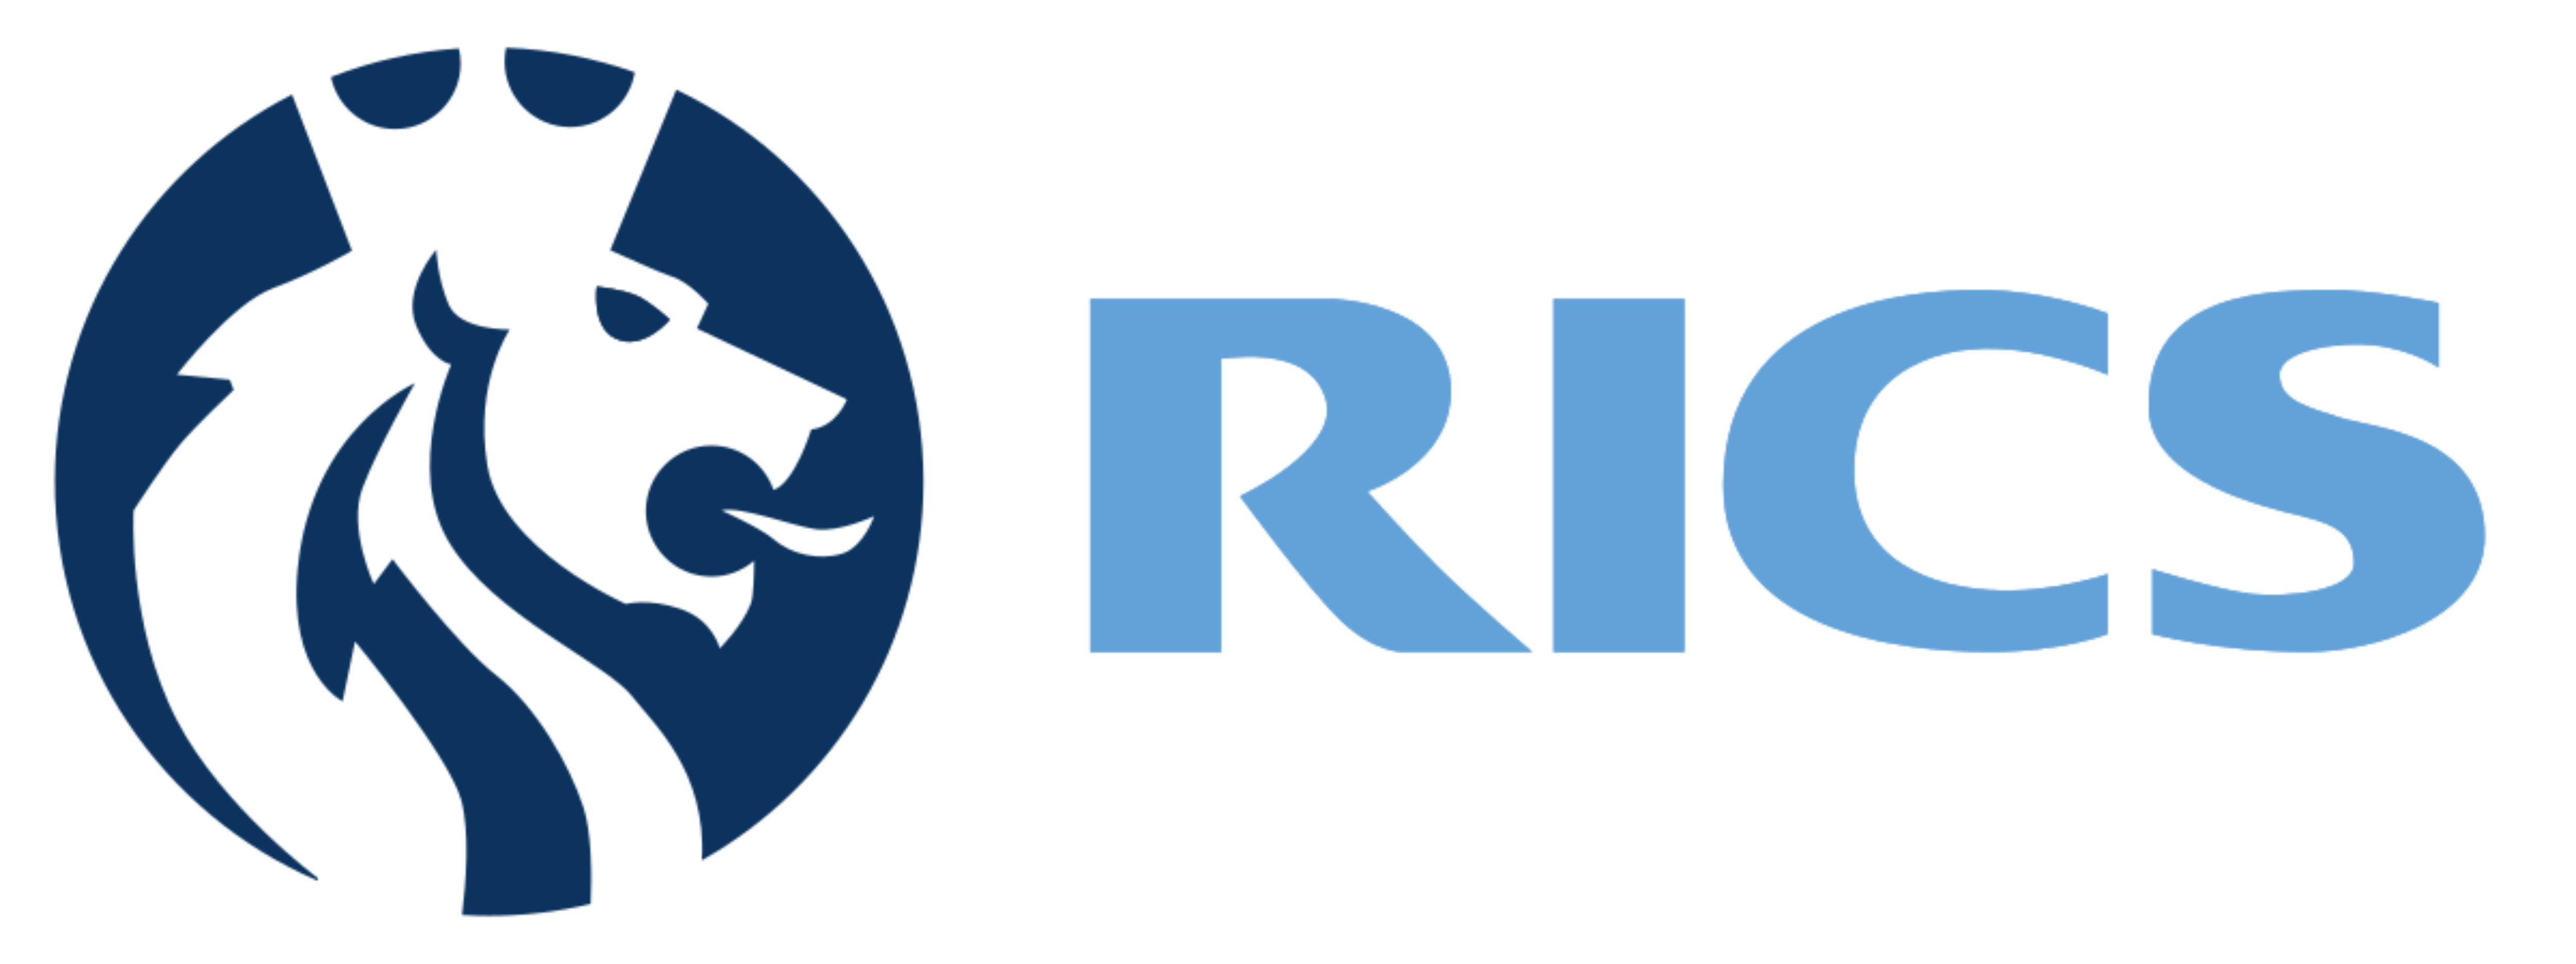 Logo RICS